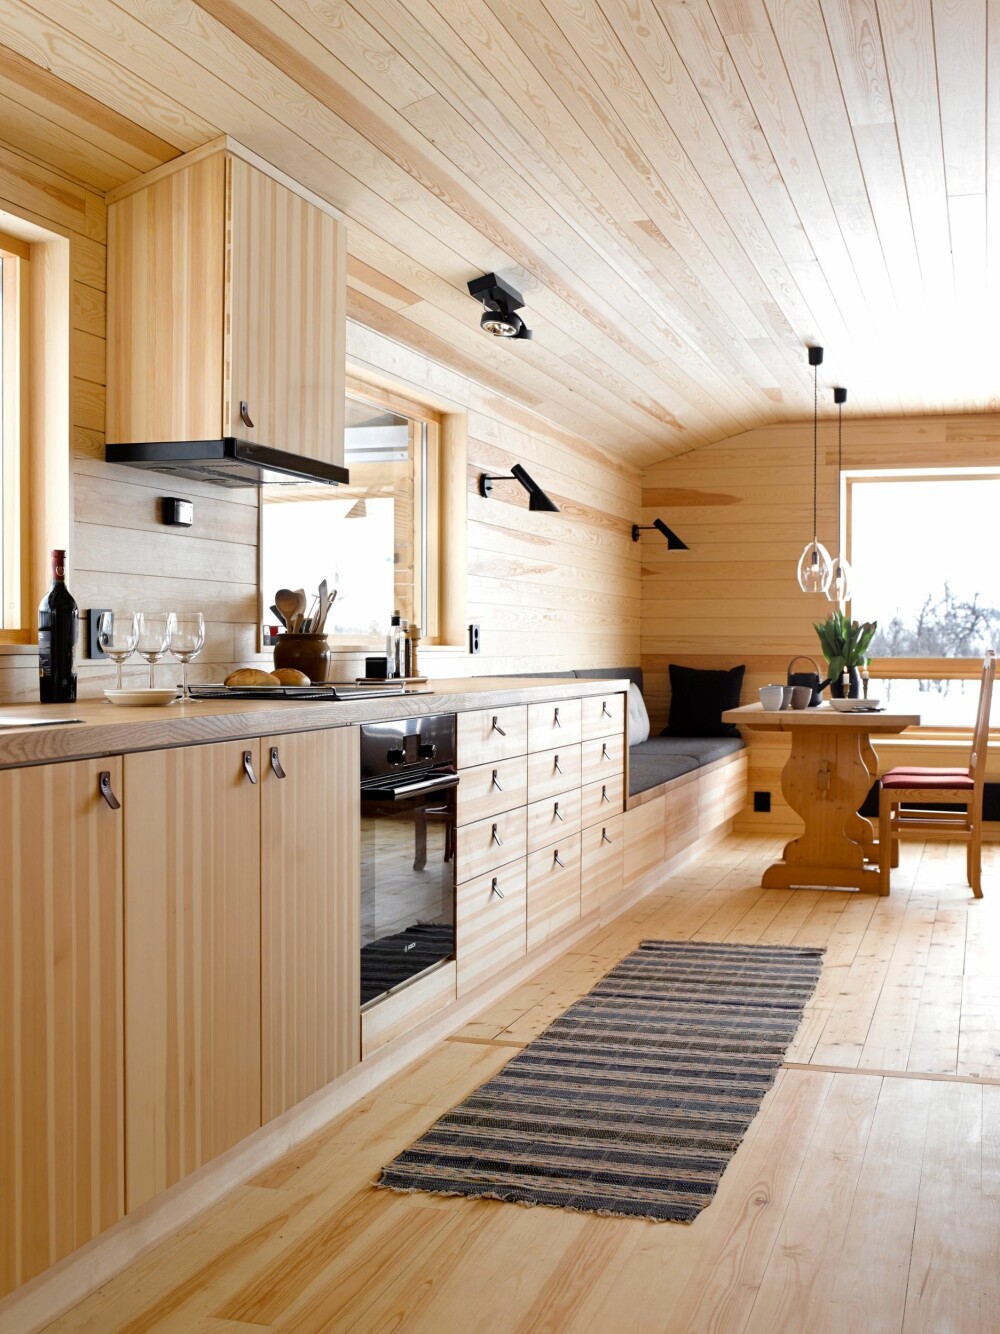 SITTEBENK: Kjøkkenbenken trappes 
ned og blir til sittebenk ved spisebordet. Ensartet materialbruk på innredning, gulv, vegg og tak gir et rolig uttrykk.